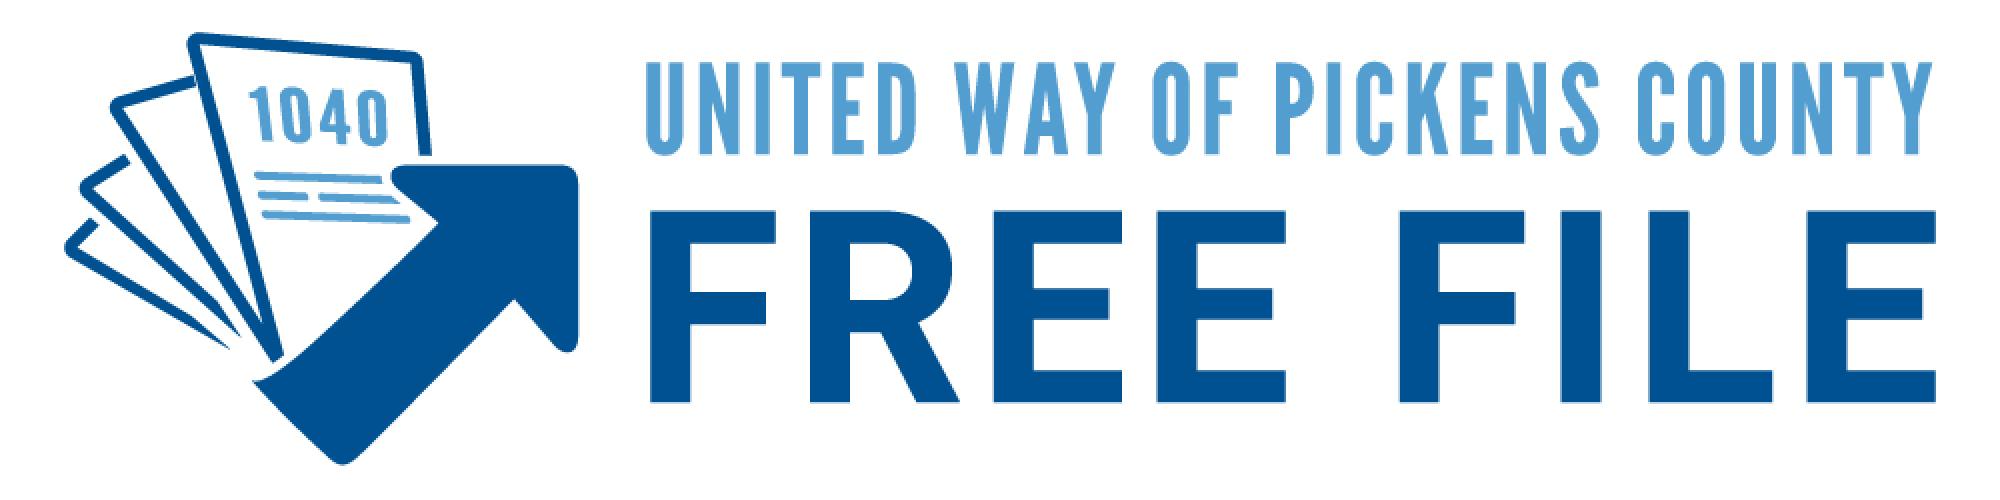 Free File logo